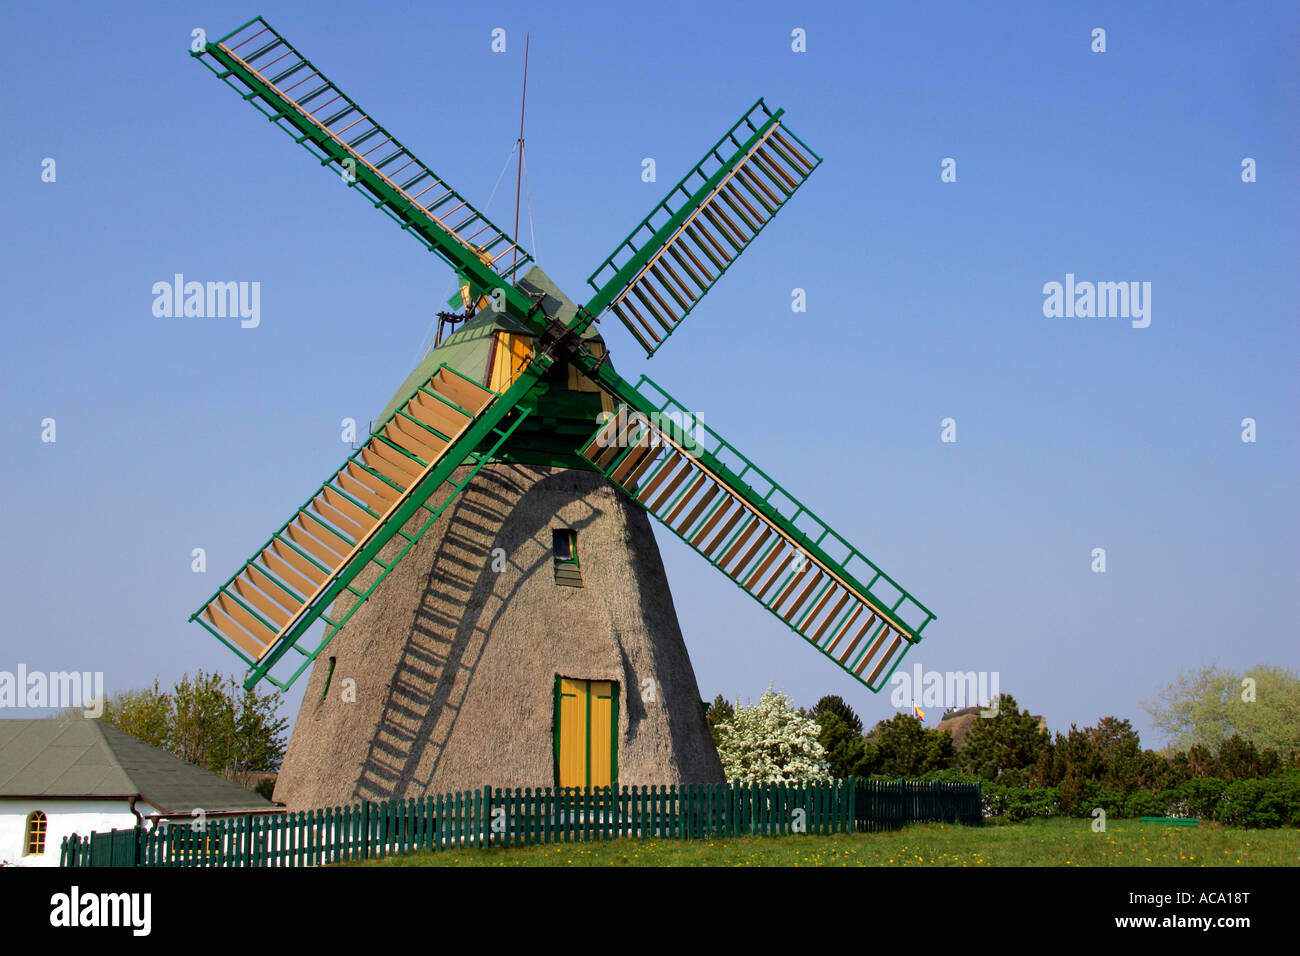 Alte Windmühle bauen im holländischen Stil - Nebel, Amrum, Nordfriesland, Schleswig-Holstein, Deutschland, Europa Stockfoto